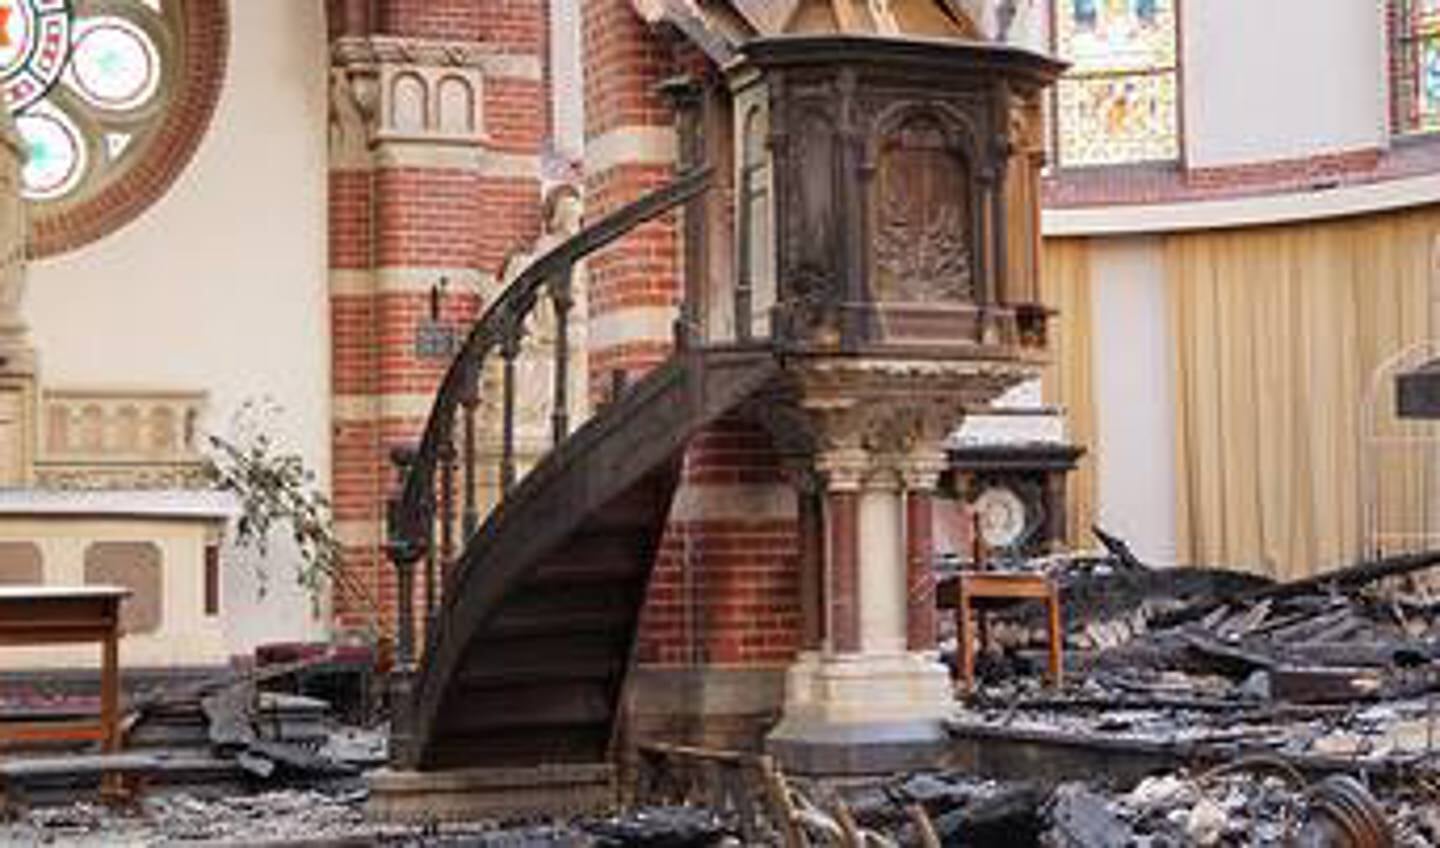 De ravage in de kerk was enorm na de brand.